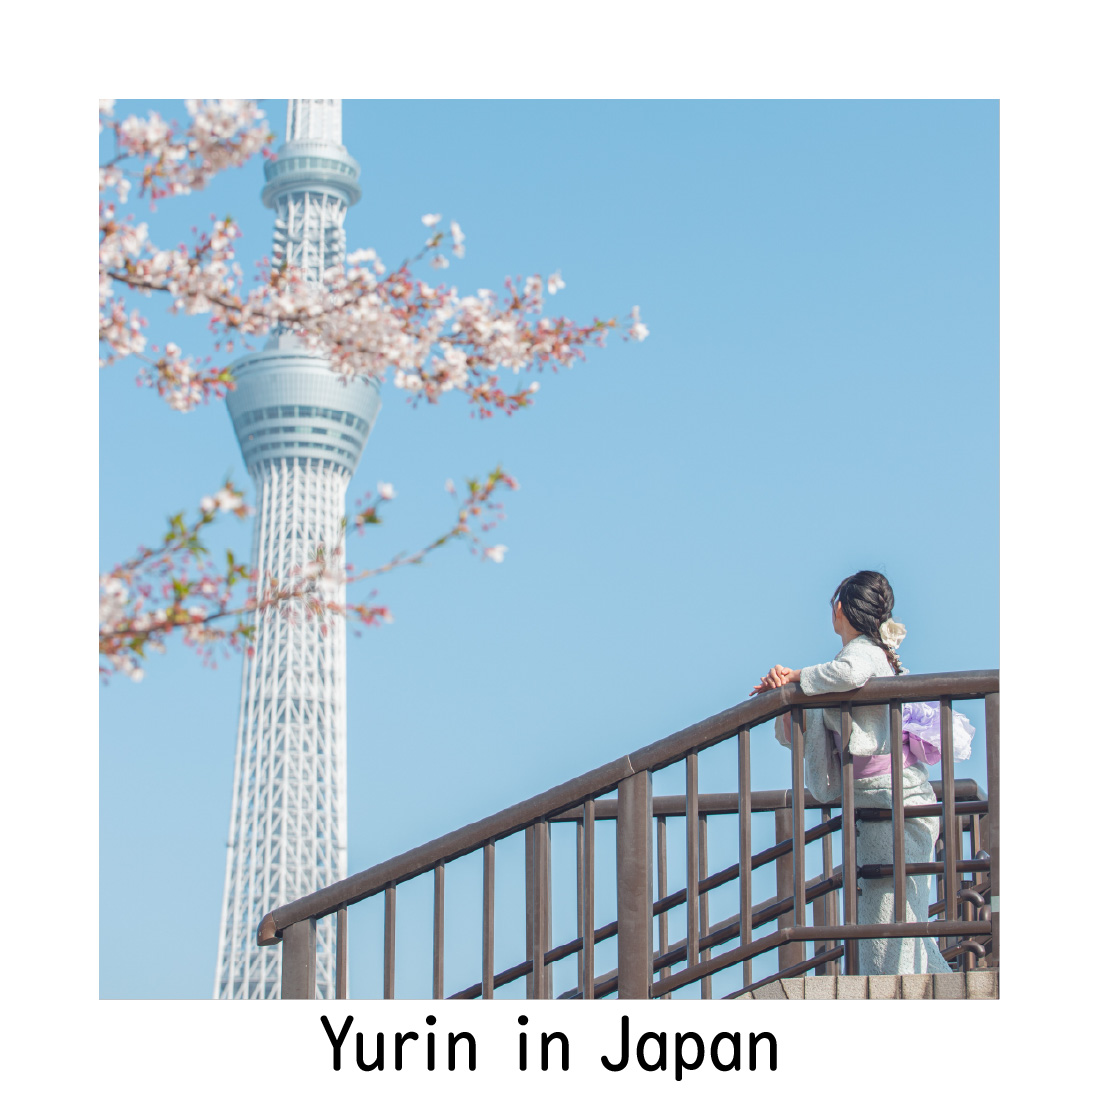 Yurin in Japan